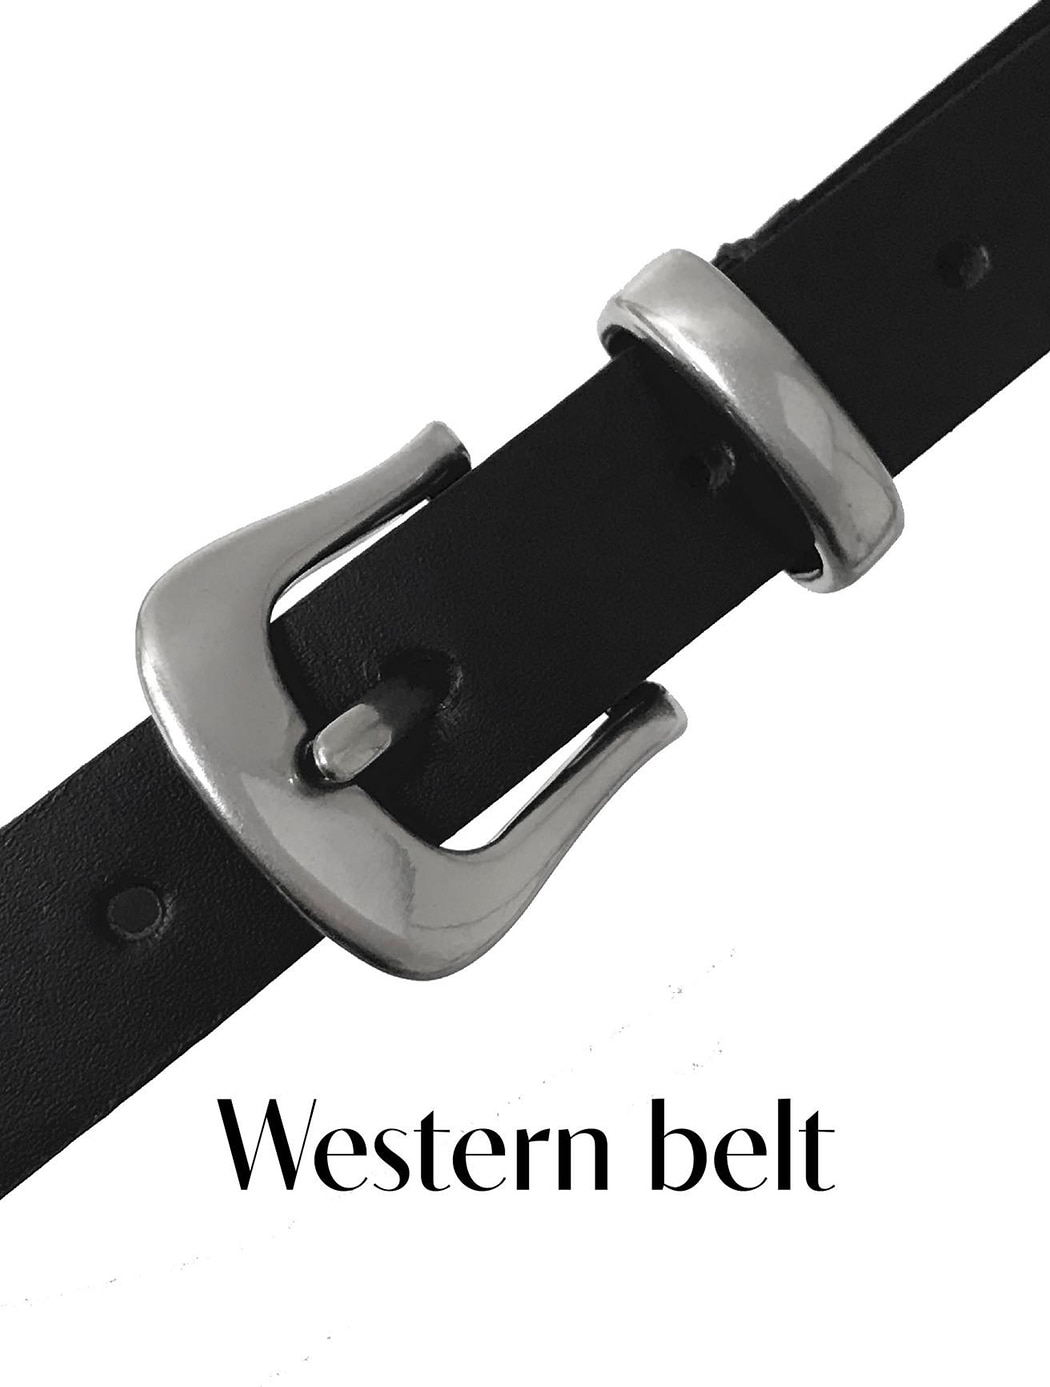 Western belt